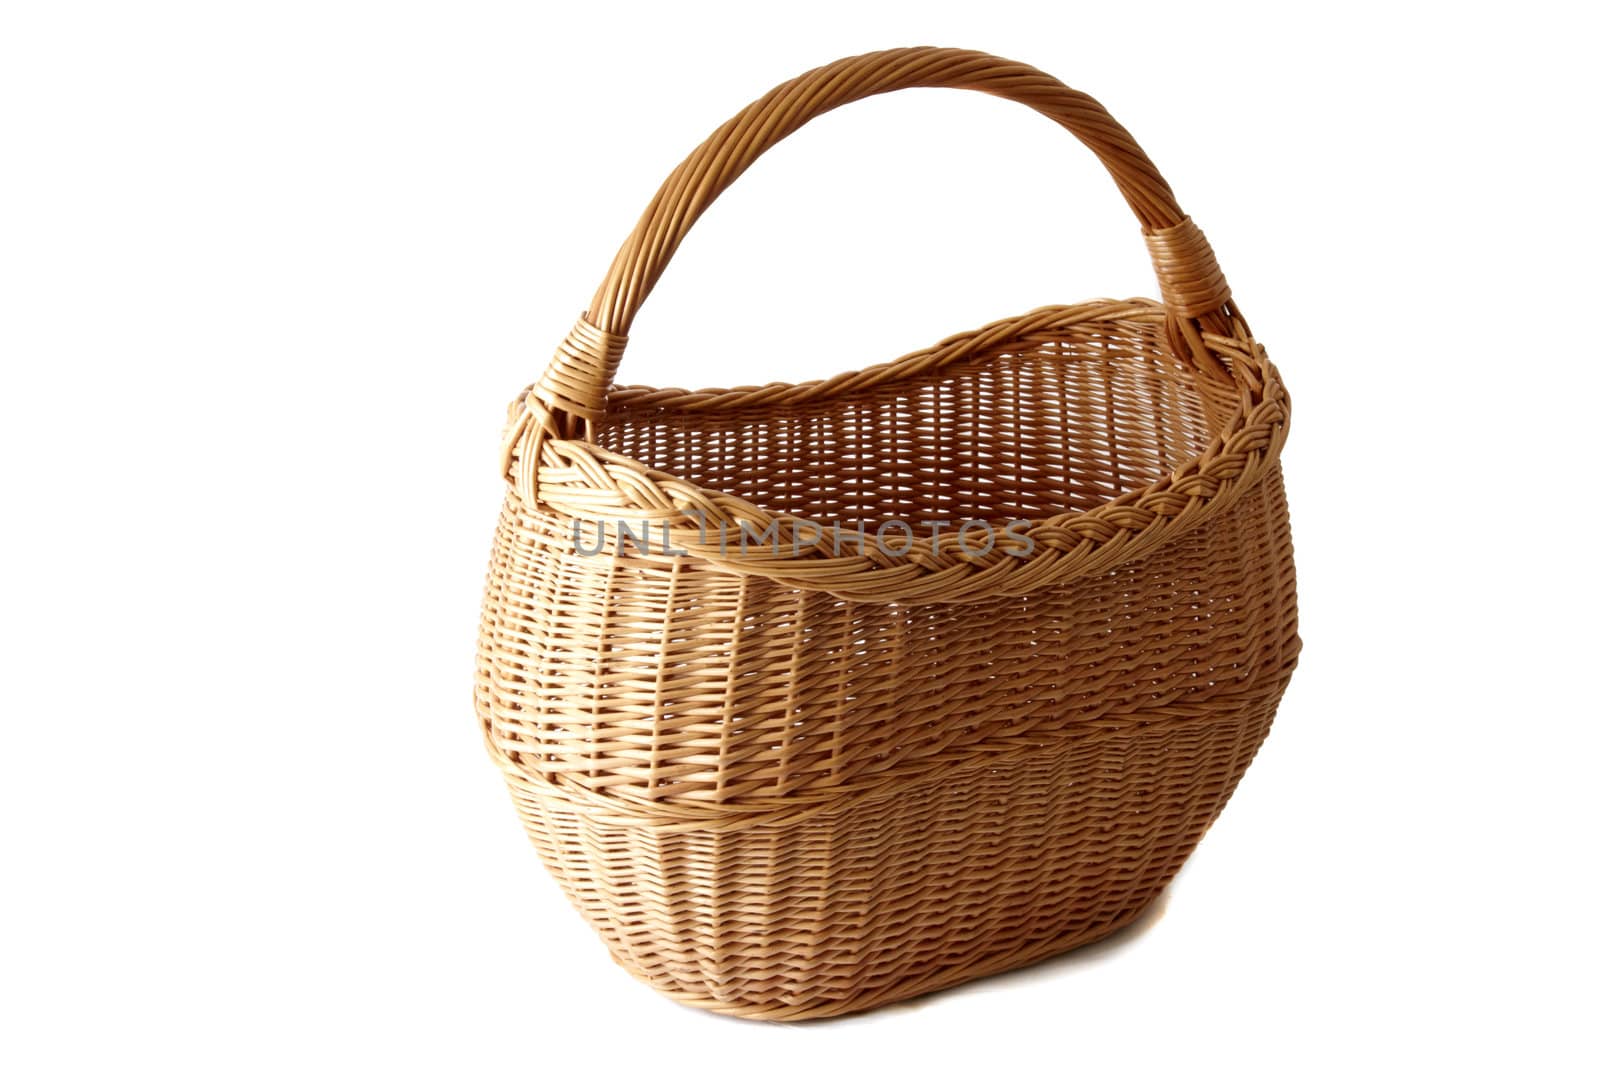 Empty basket isolated on white background